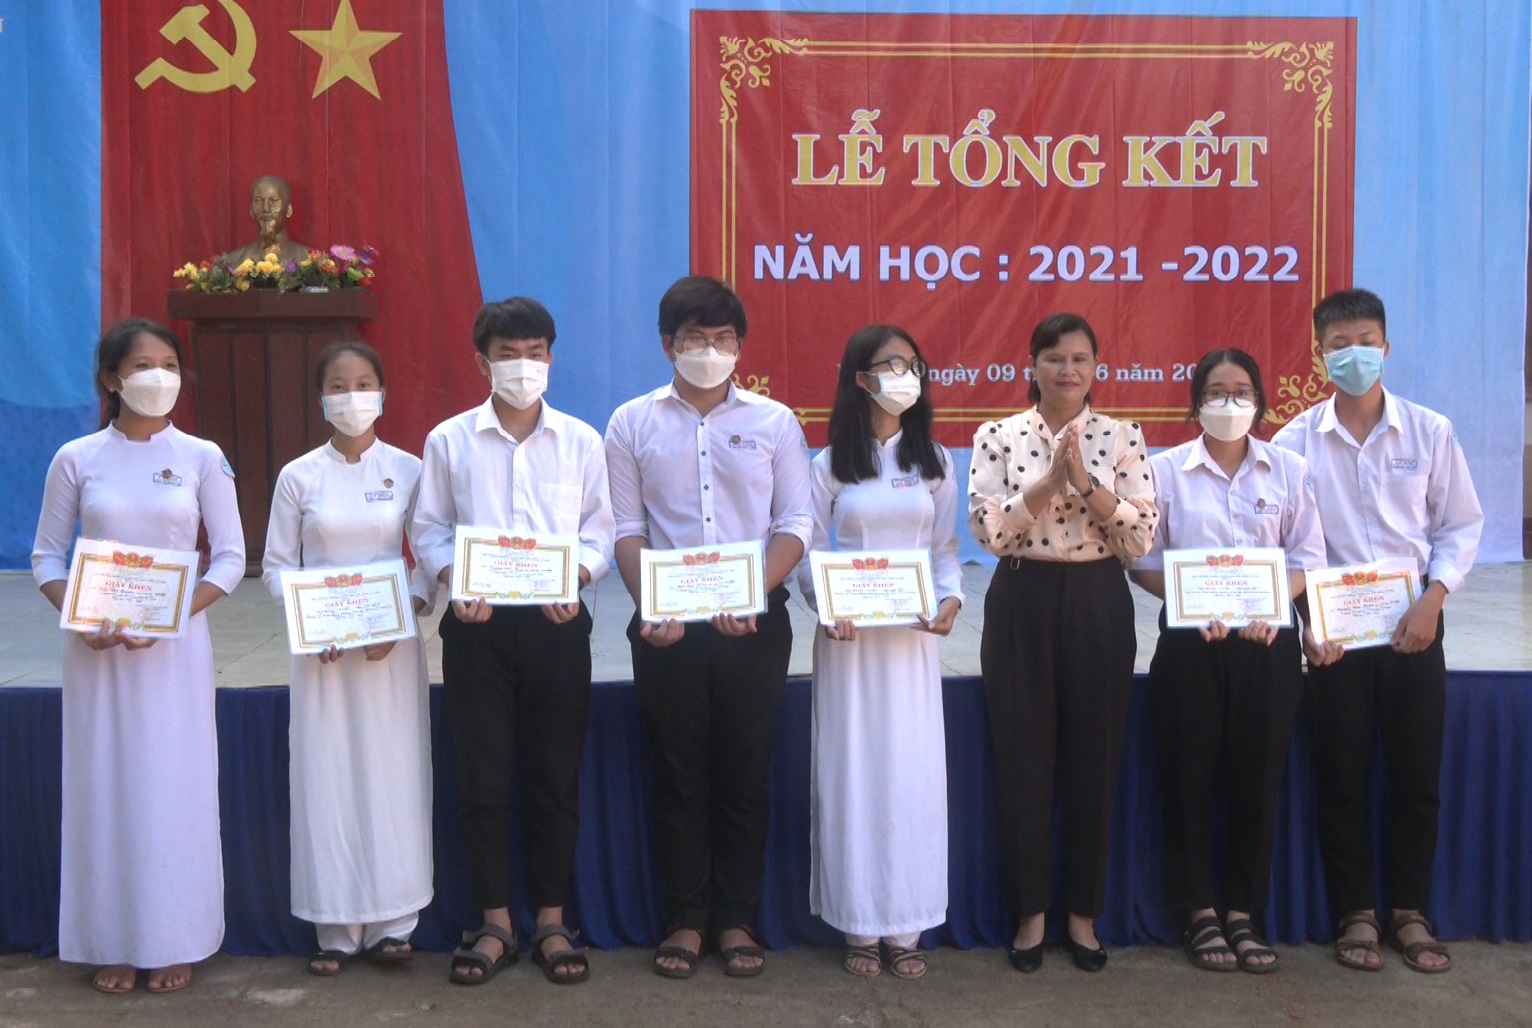 Trường THPT Lý Sơn tổ chức tổng kết năm học 2021-2022